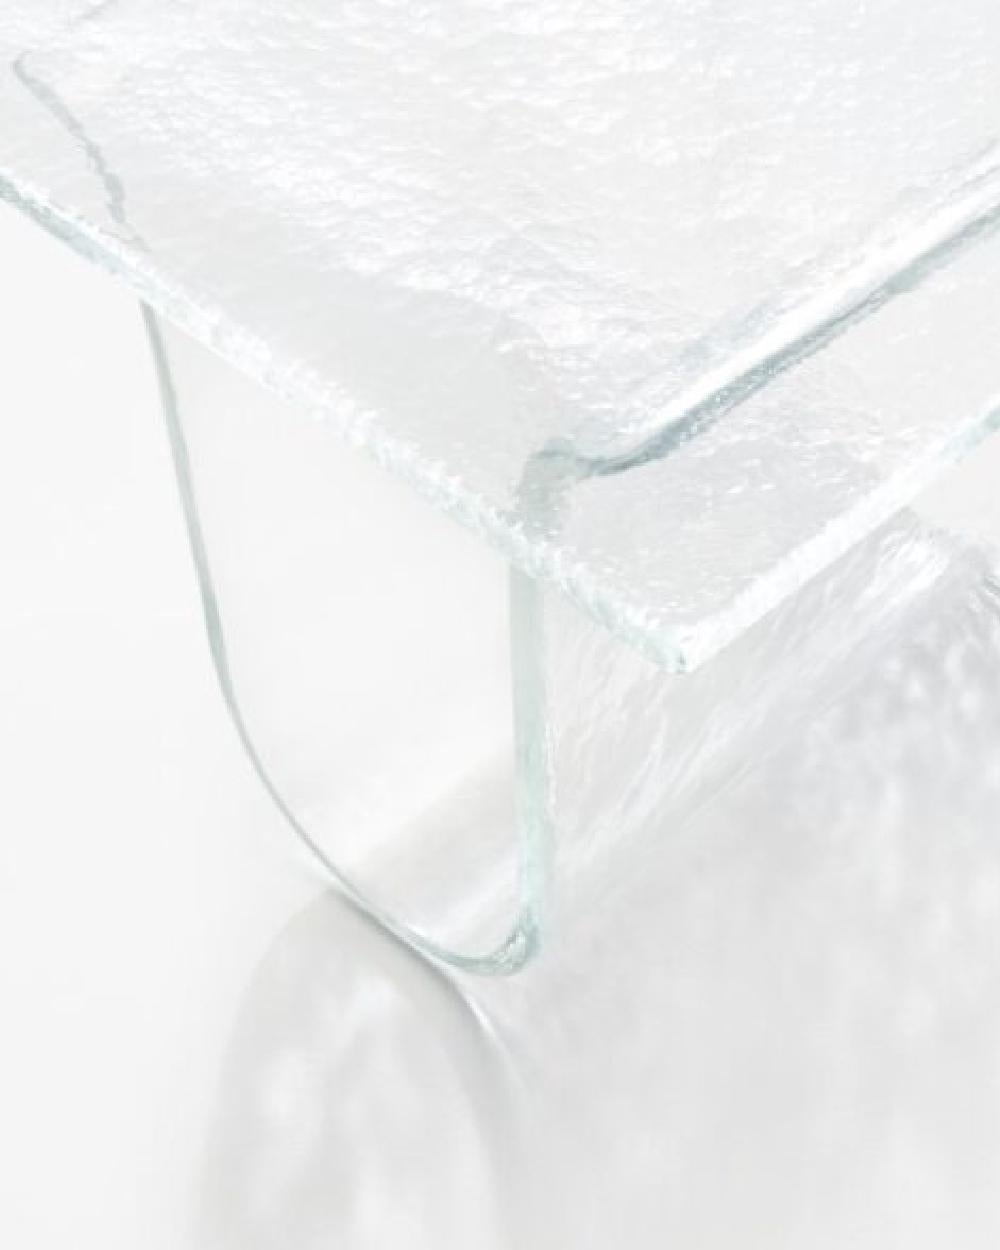 Melt ist eine Collaboration mit dem japanischen Studio Nendo, inspiriert von der Flexibilität von geschmolzenem Glas und der Schwerkraft. Die Entstehung von Melt war eine einzigartige und komplexe Produktion. Nachdem er die Handwerker in den